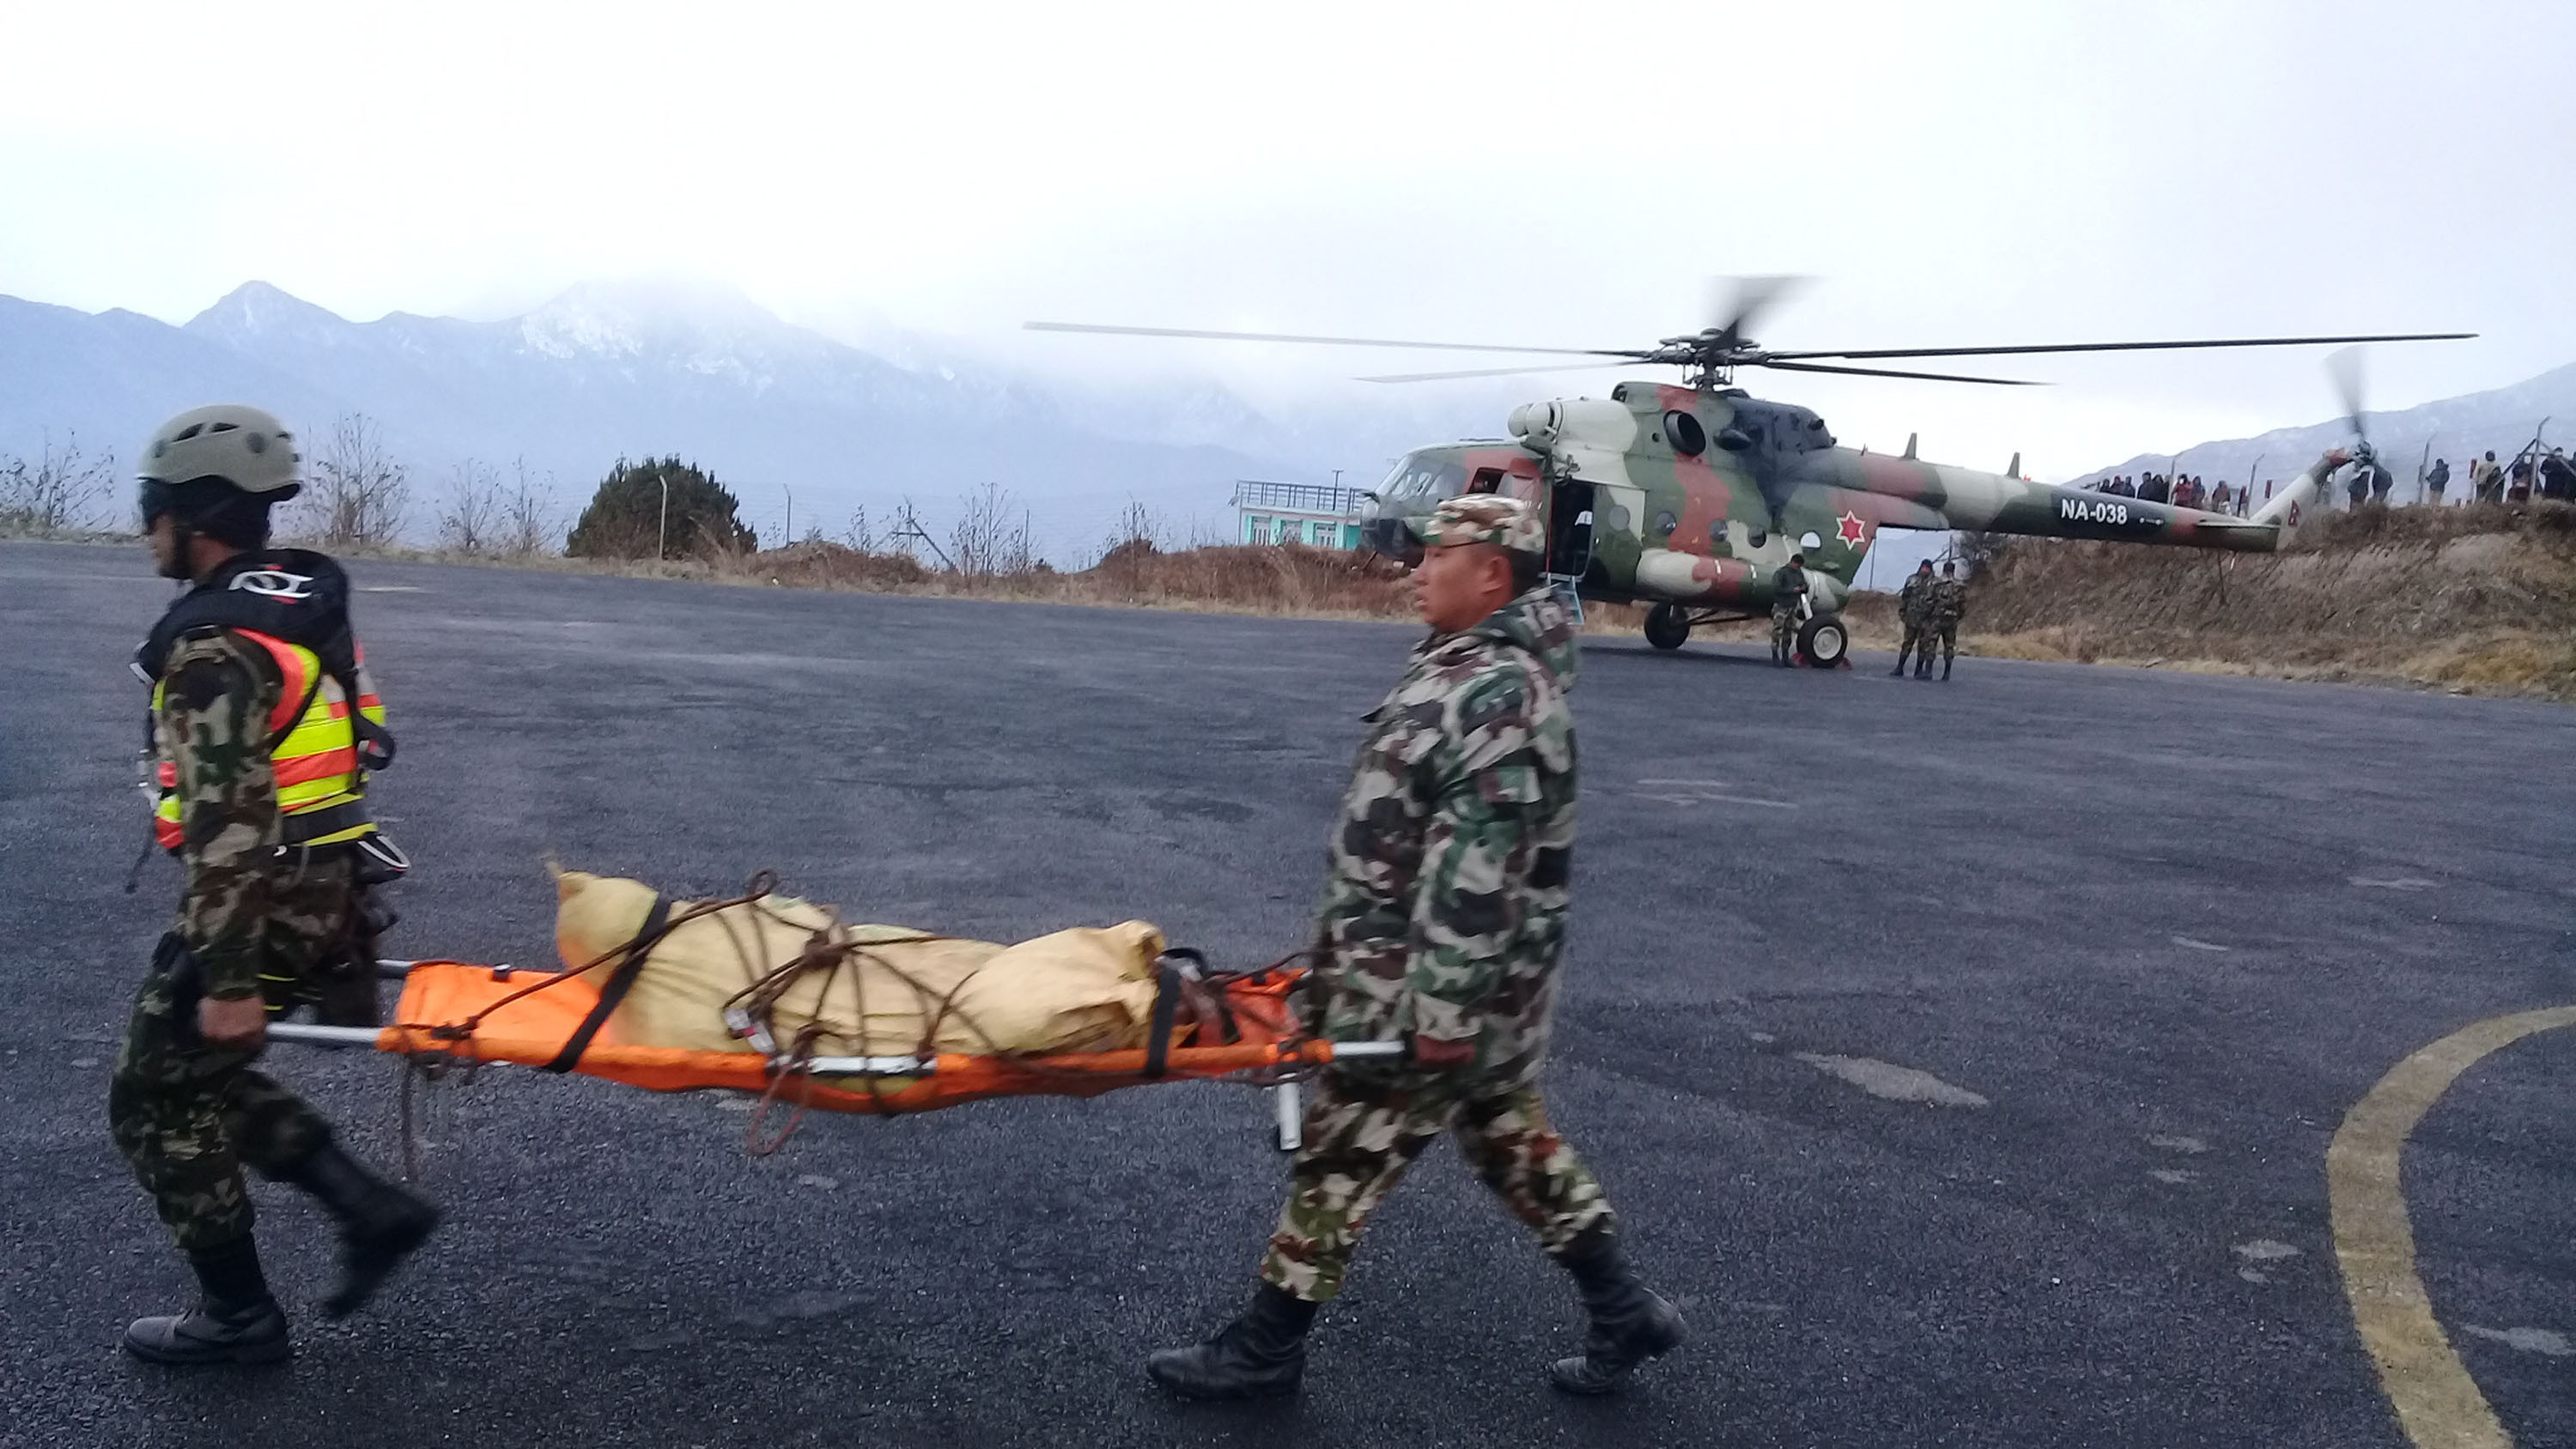 ताप्लेजुङमा बुधबार हेलिकप्टर दुर्घटनामा परी मृत्यु भएकाको शव नेपाली सेनाले घटनास्थलबाट सुकेटार विमानस्थलमा ल्याए पछि काठमाण्डौ ल्याउने तयारी गर्दै । तस्बिरः नारायण ढुंगाना, रासस